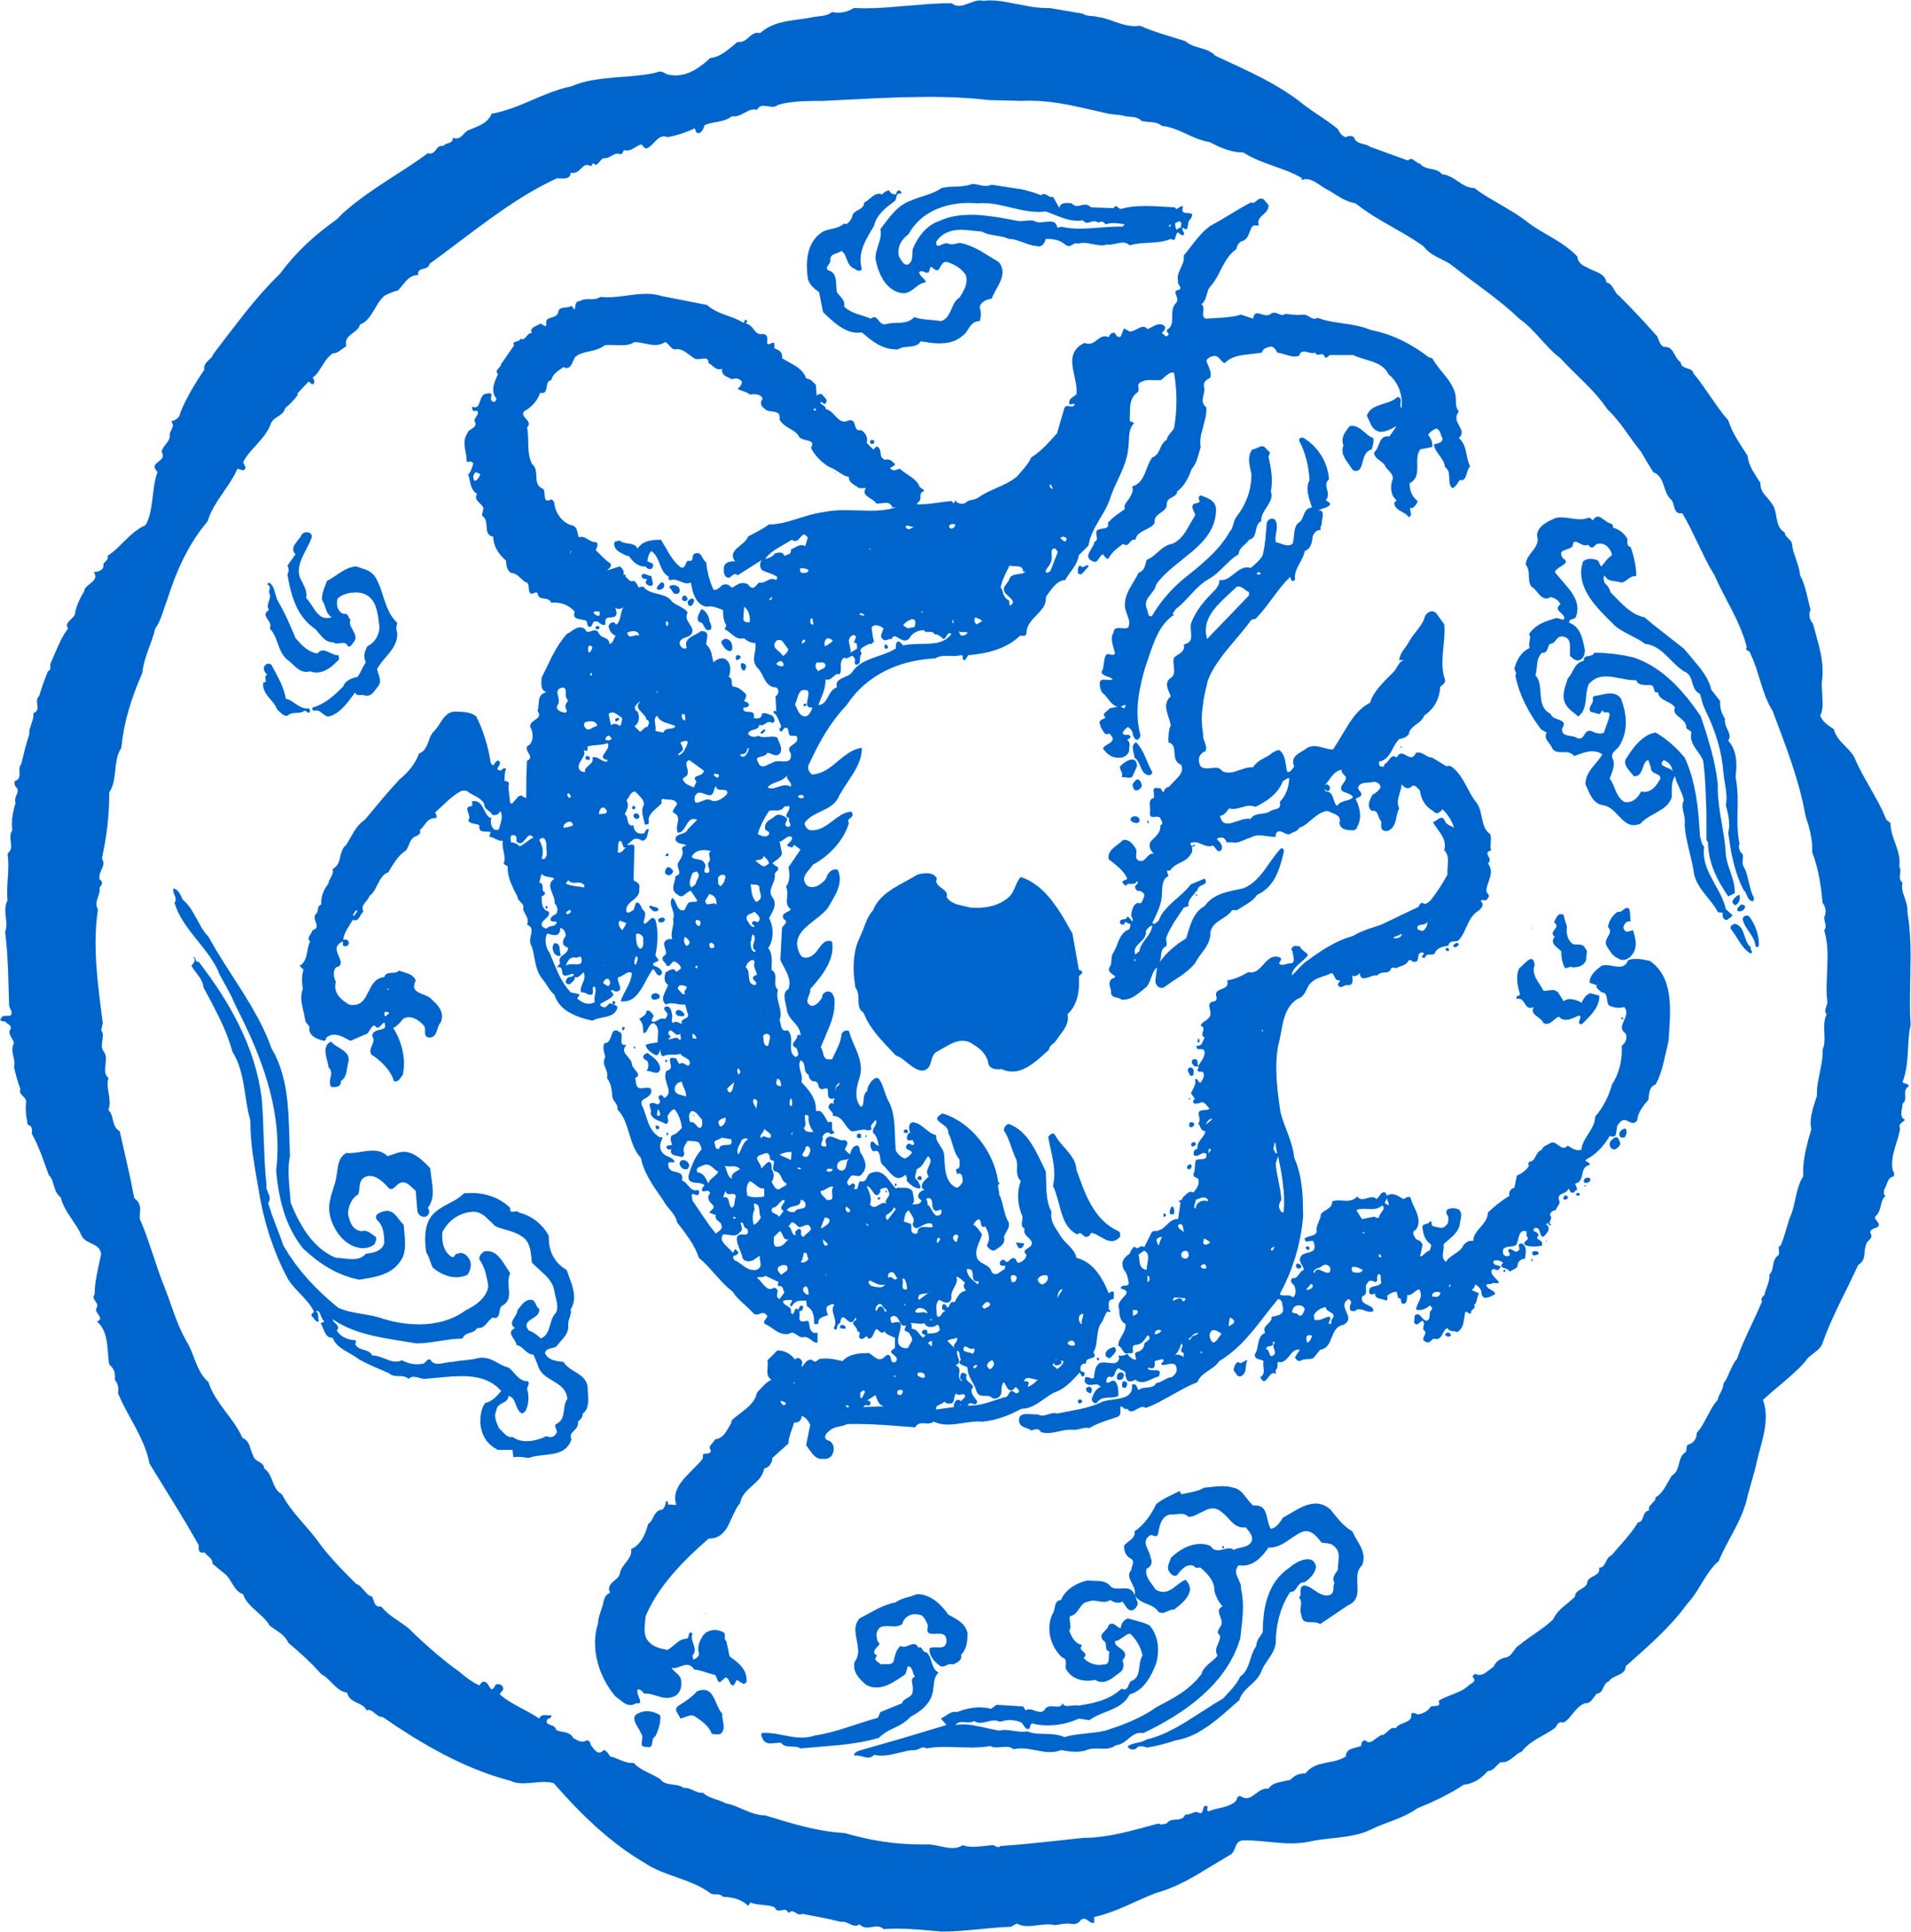 云纹,古代汉族吉祥图案,象征高升和如意,应用较广